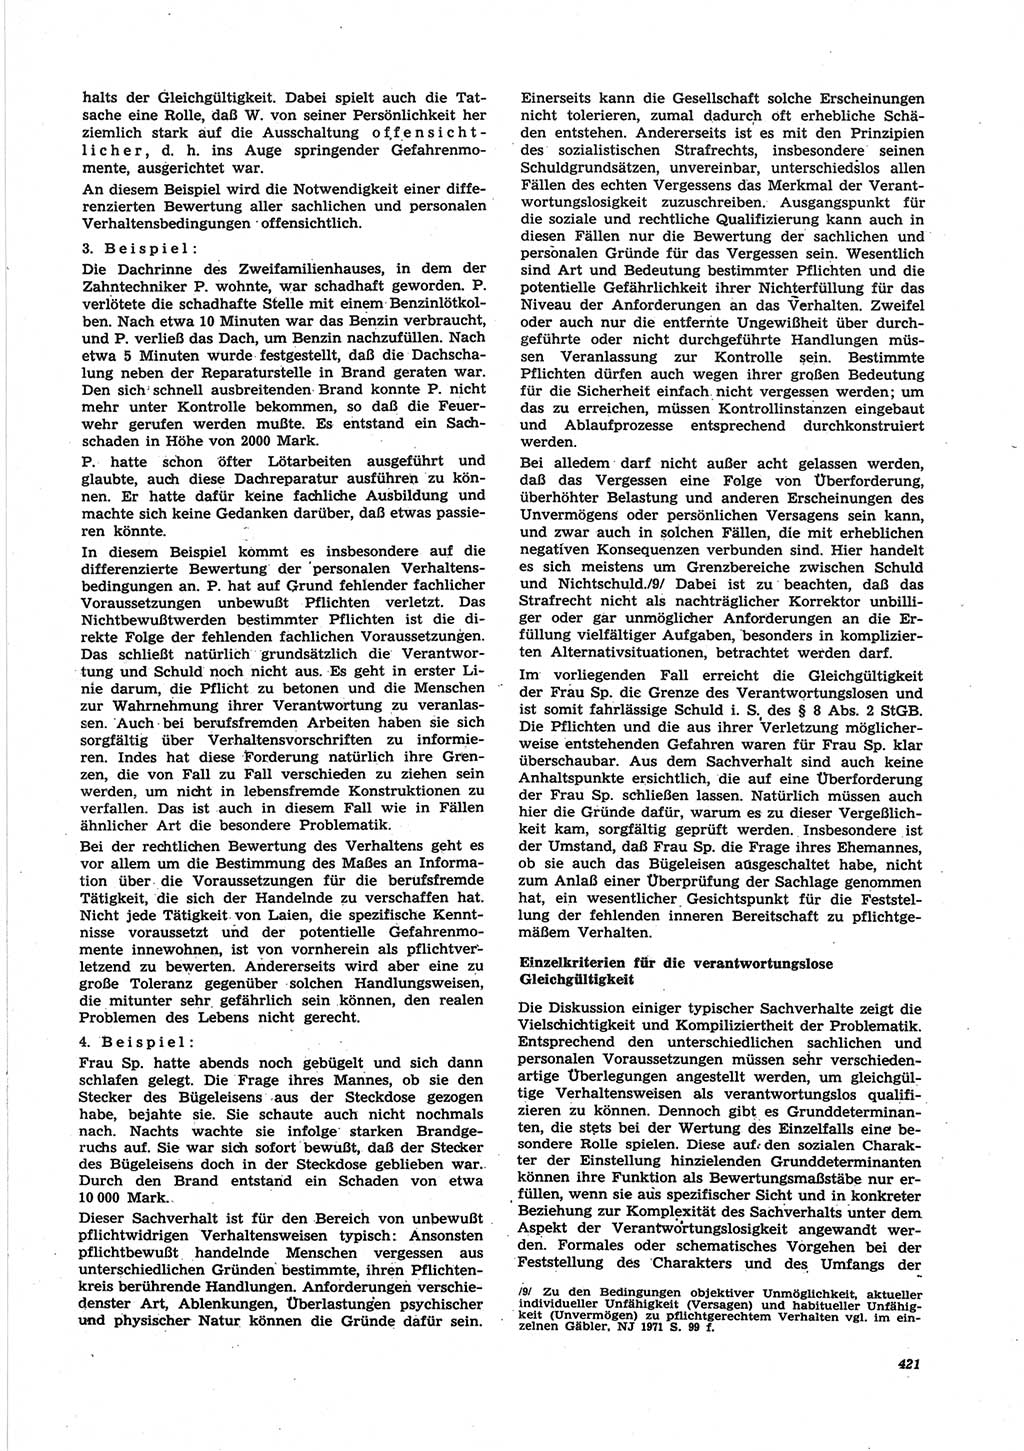 Neue Justiz (NJ), Zeitschrift für Recht und Rechtswissenschaft [Deutsche Demokratische Republik (DDR)], 25. Jahrgang 1971, Seite 421 (NJ DDR 1971, S. 421)